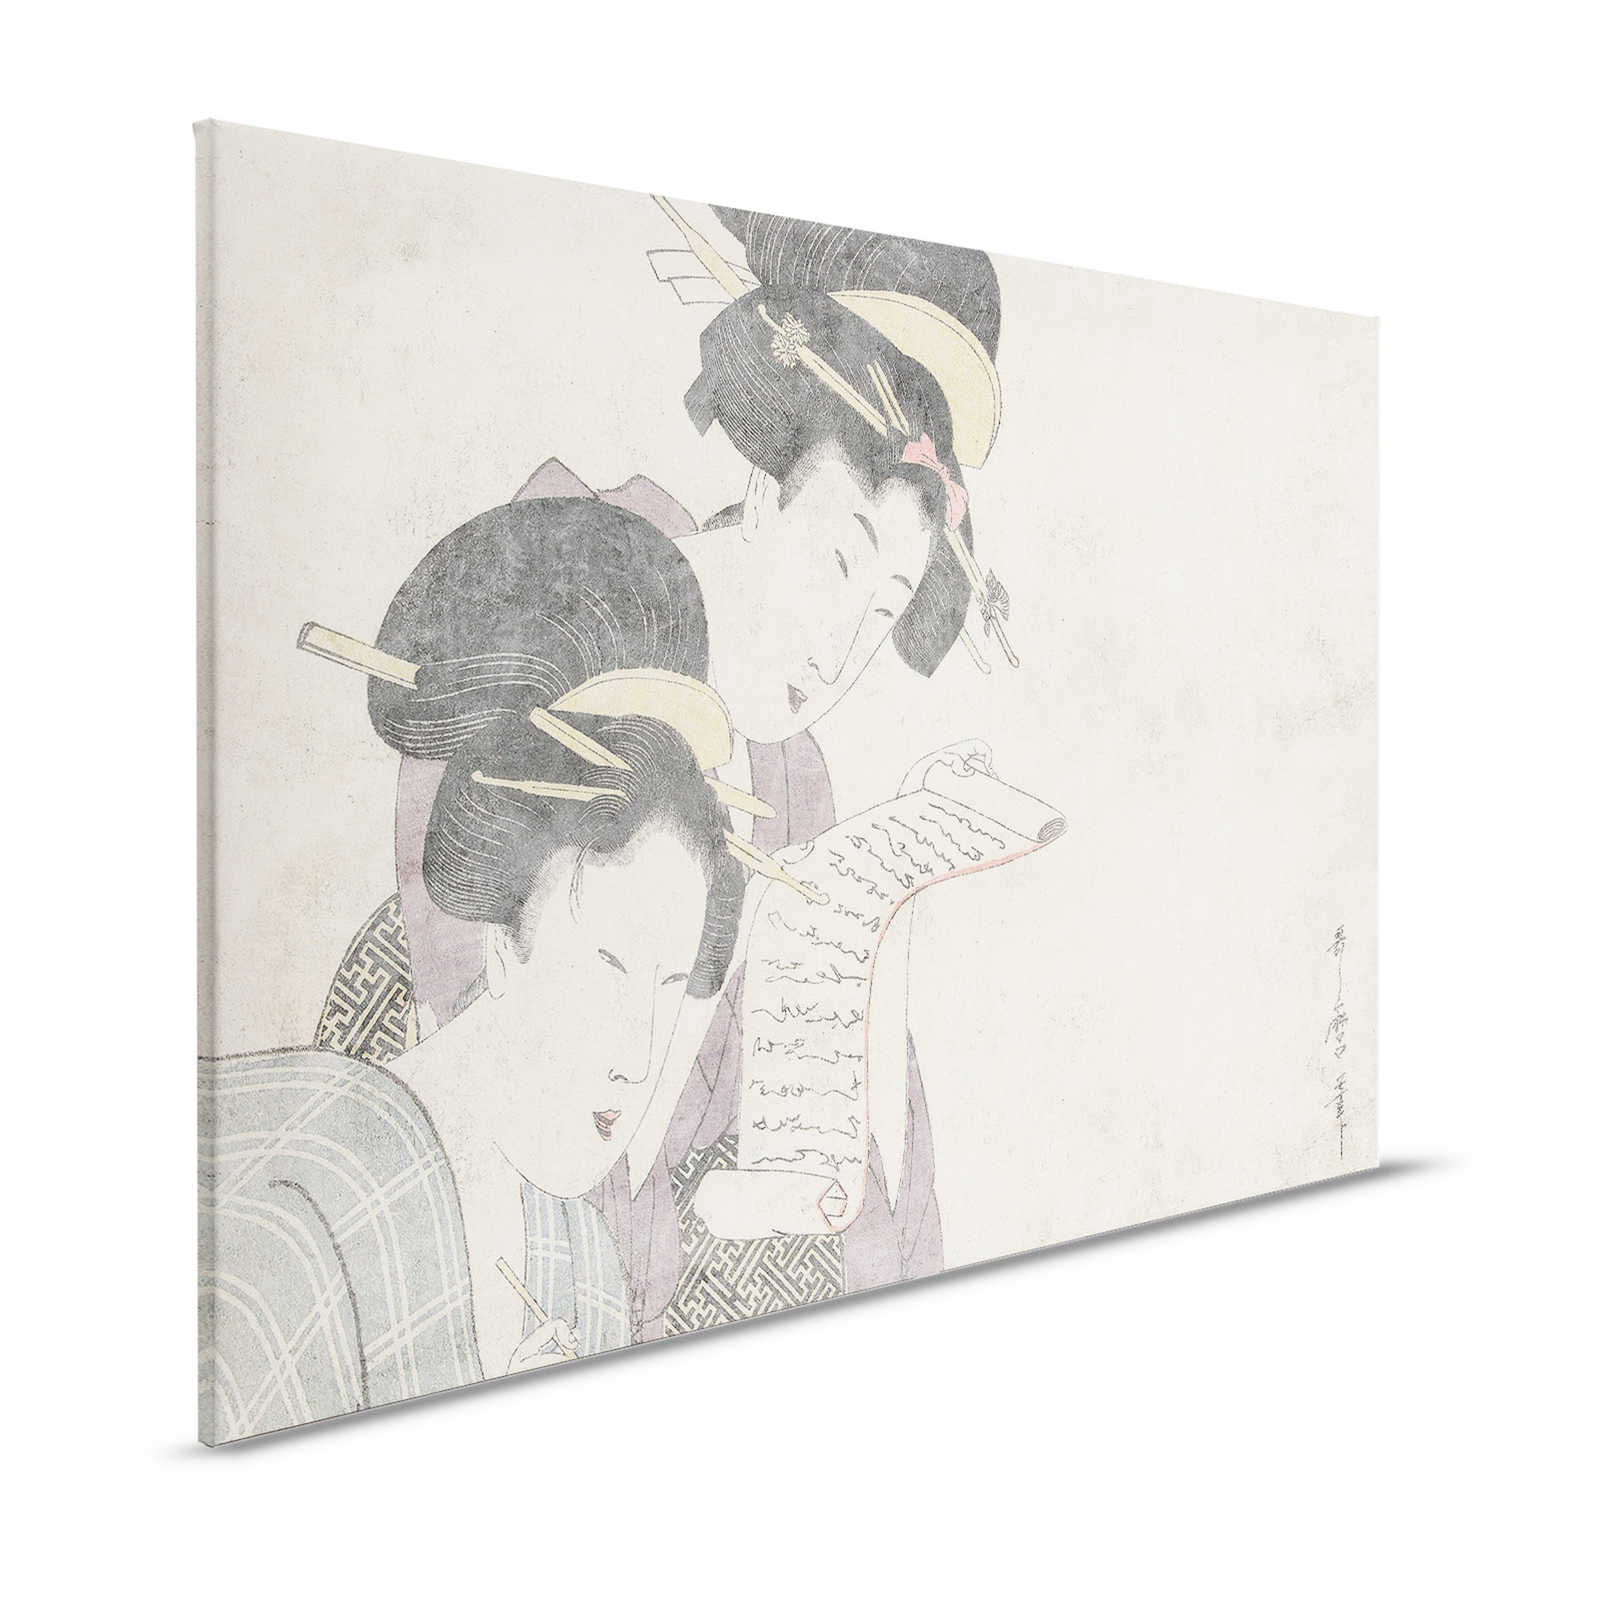 Osaka 3 - Toile asiatique vintage dessin & texture de plâtre - 1,20 m x 0,80 m
